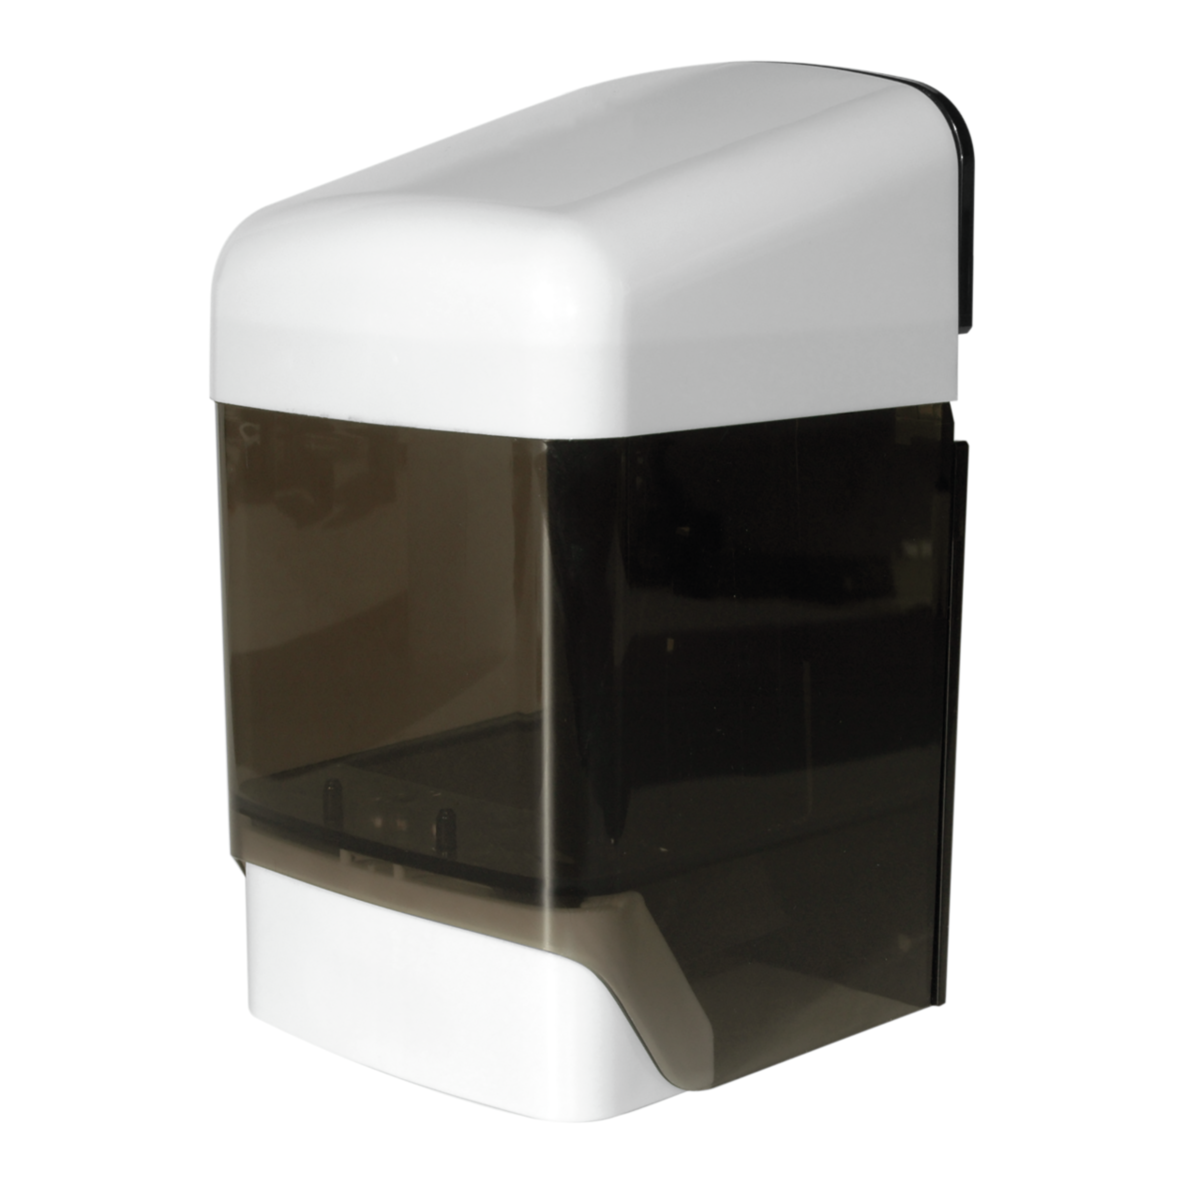 ingo-top R 15 Seifenspender 1500 ml weiß und dunkel-transparent, Kunststoff,